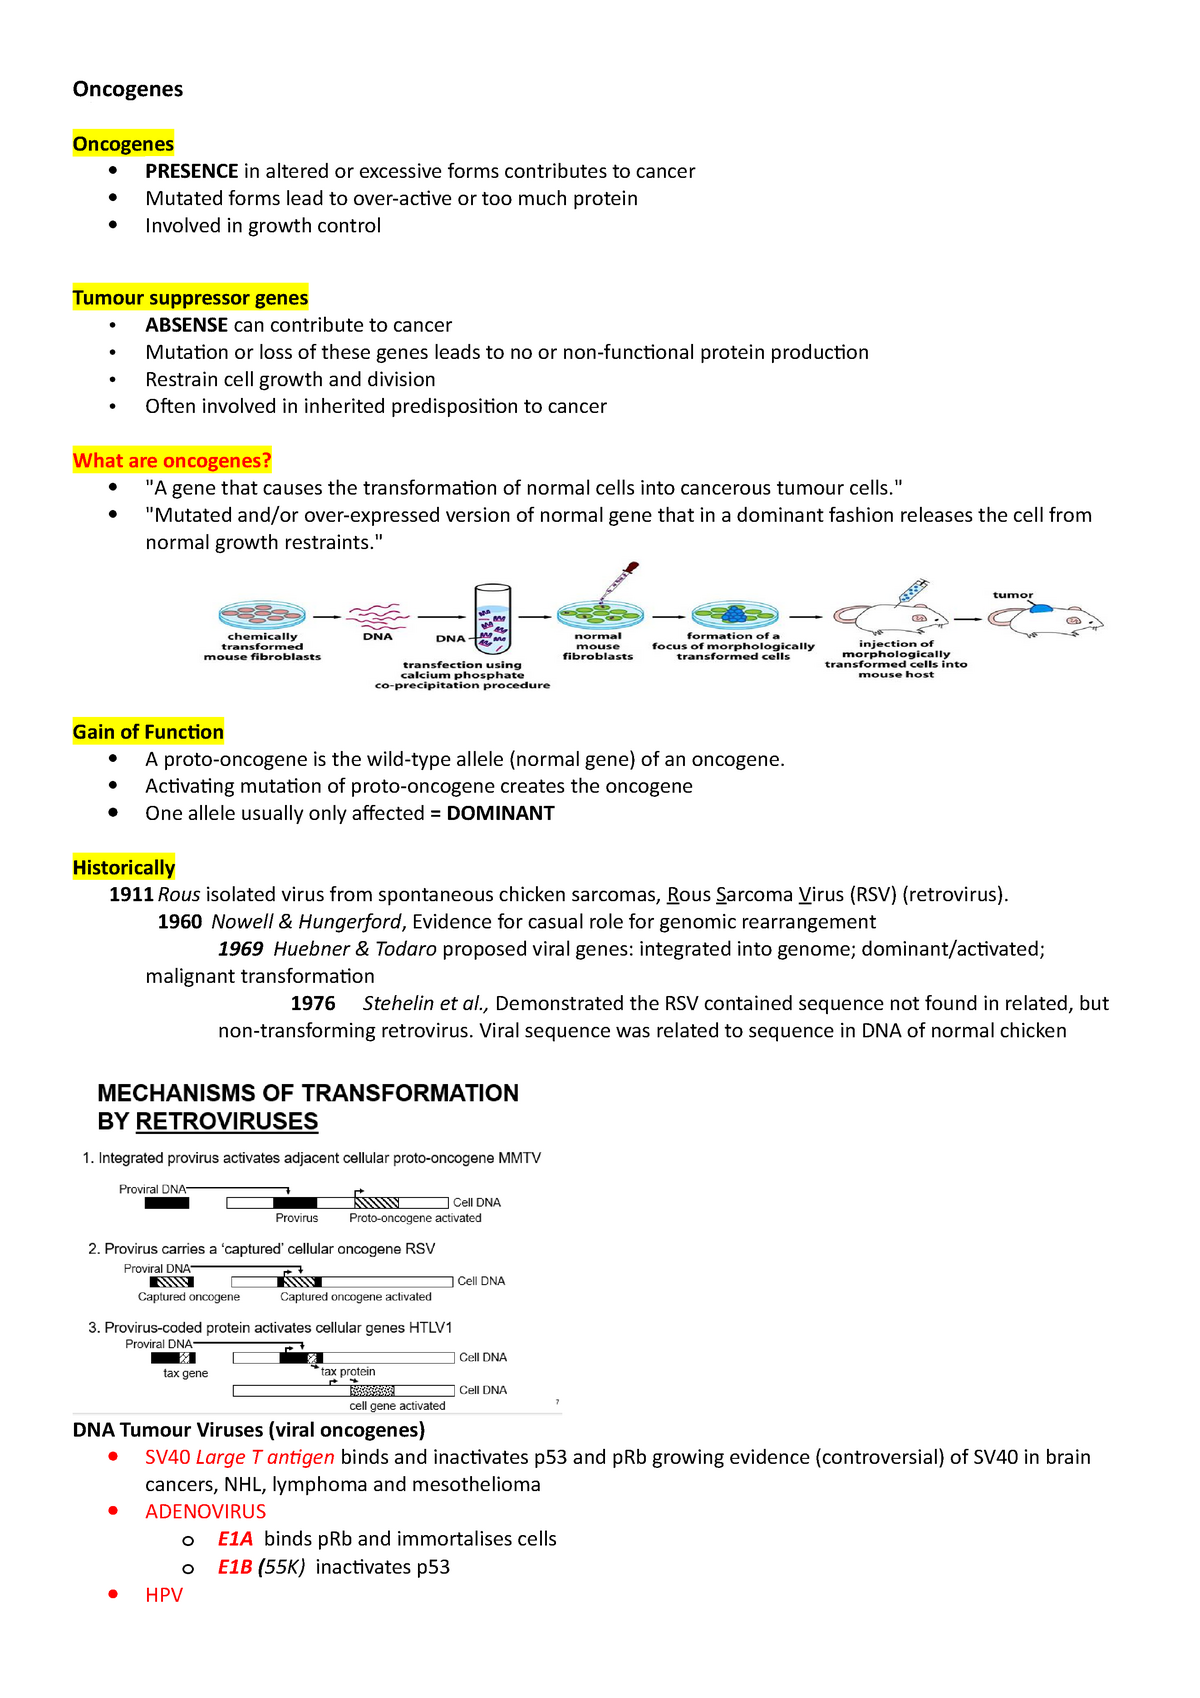 oncogenes-lecture-notes-2-4-oncogenes-oncogenes-presence-in-altered